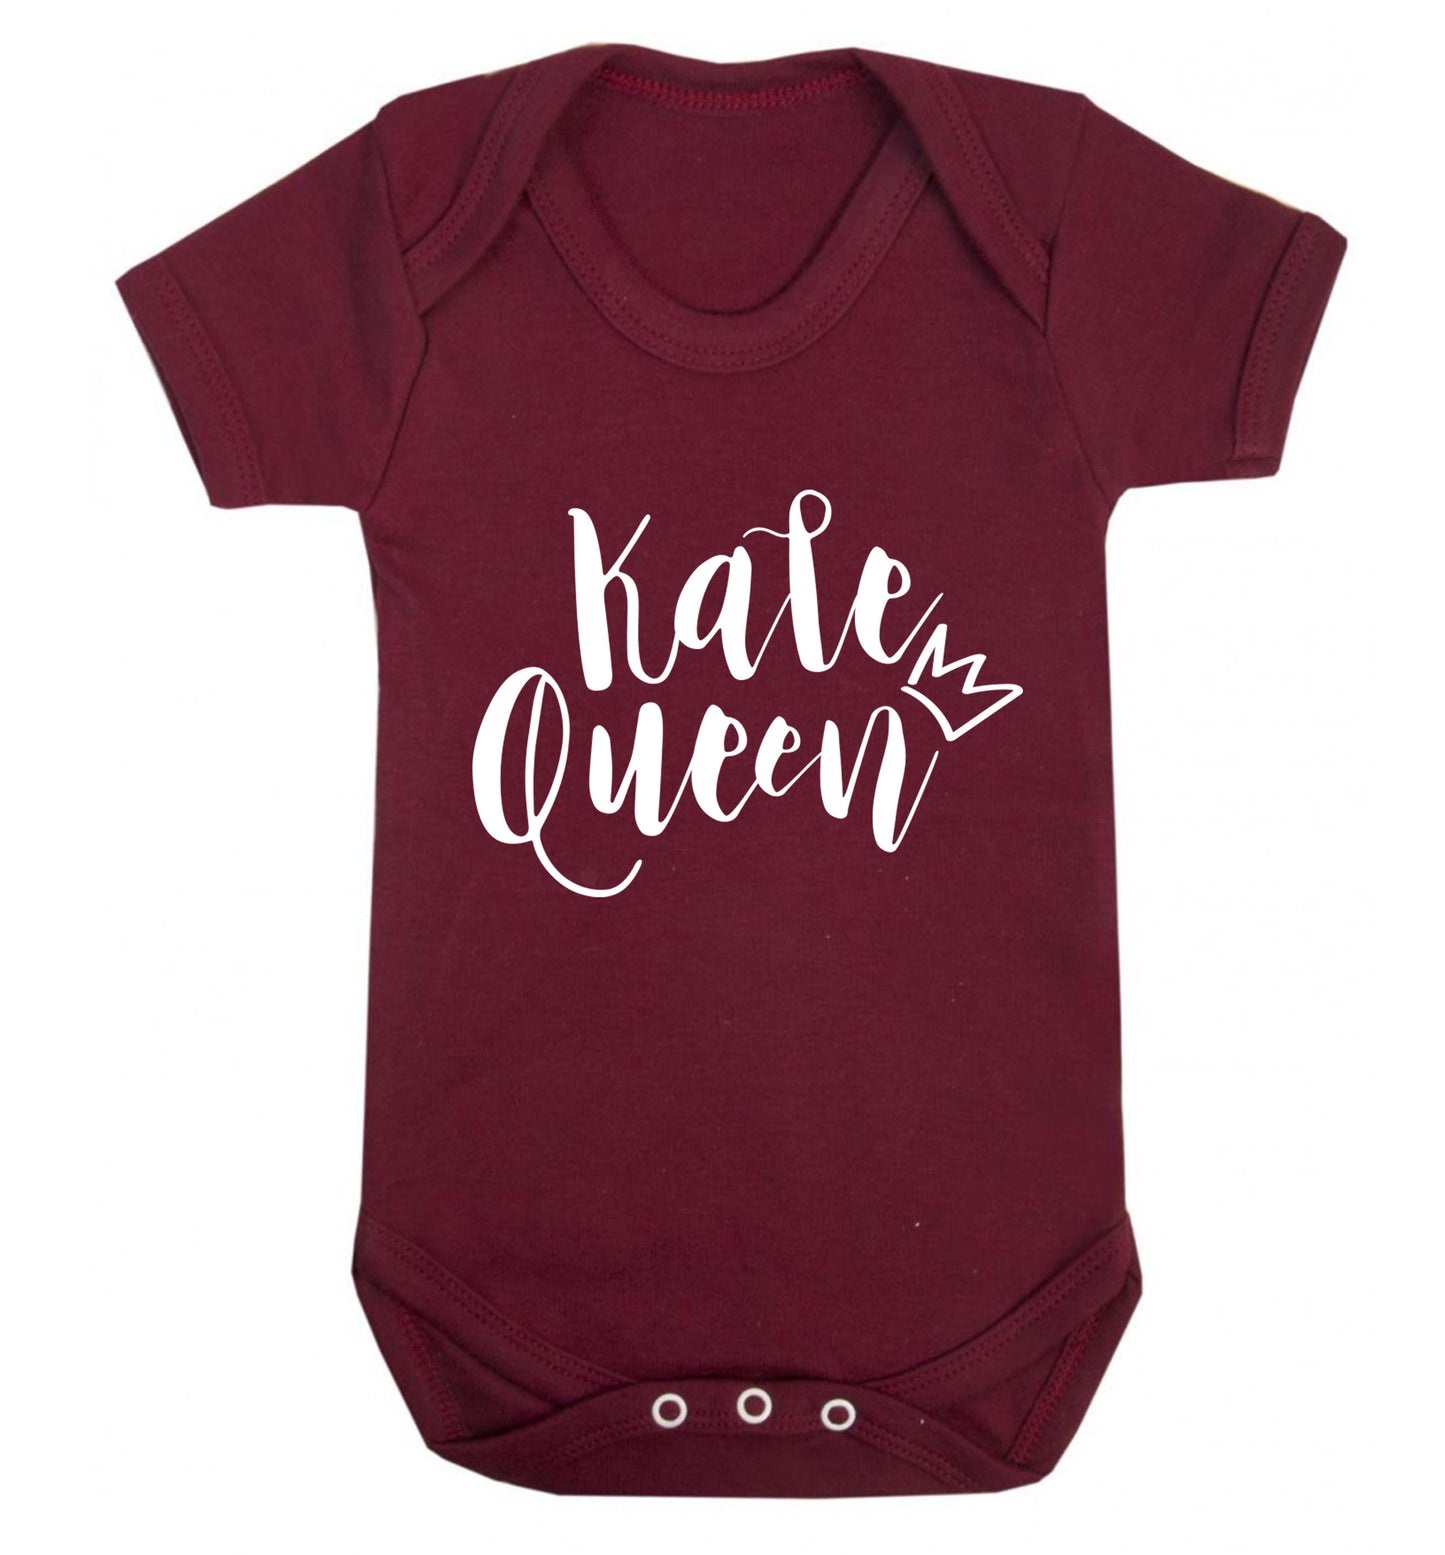 Kale Queen Baby Vest maroon 18-24 months